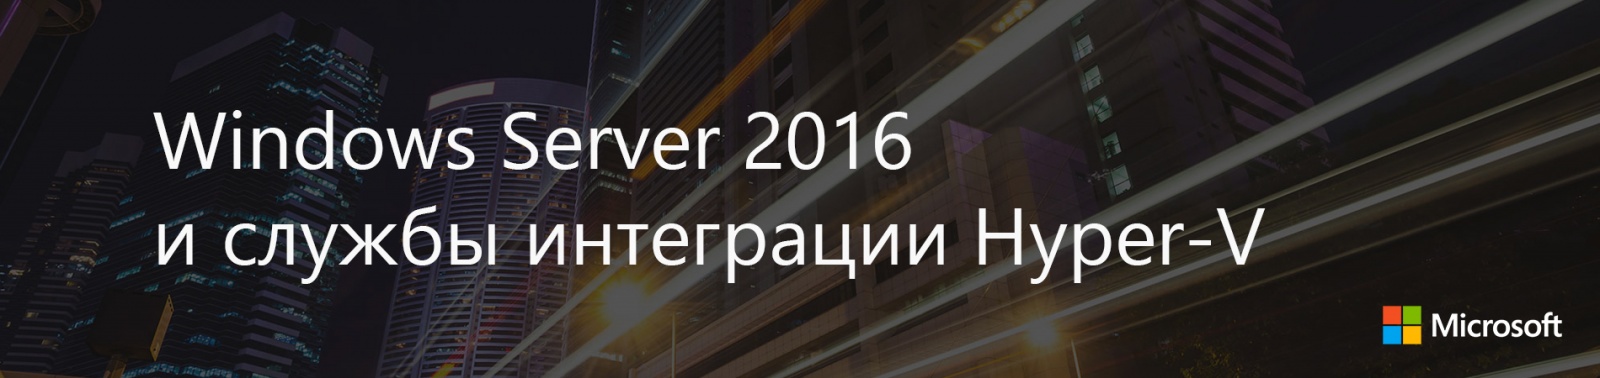 Windows Server 2016 и службы интеграции Hyper-V - 1